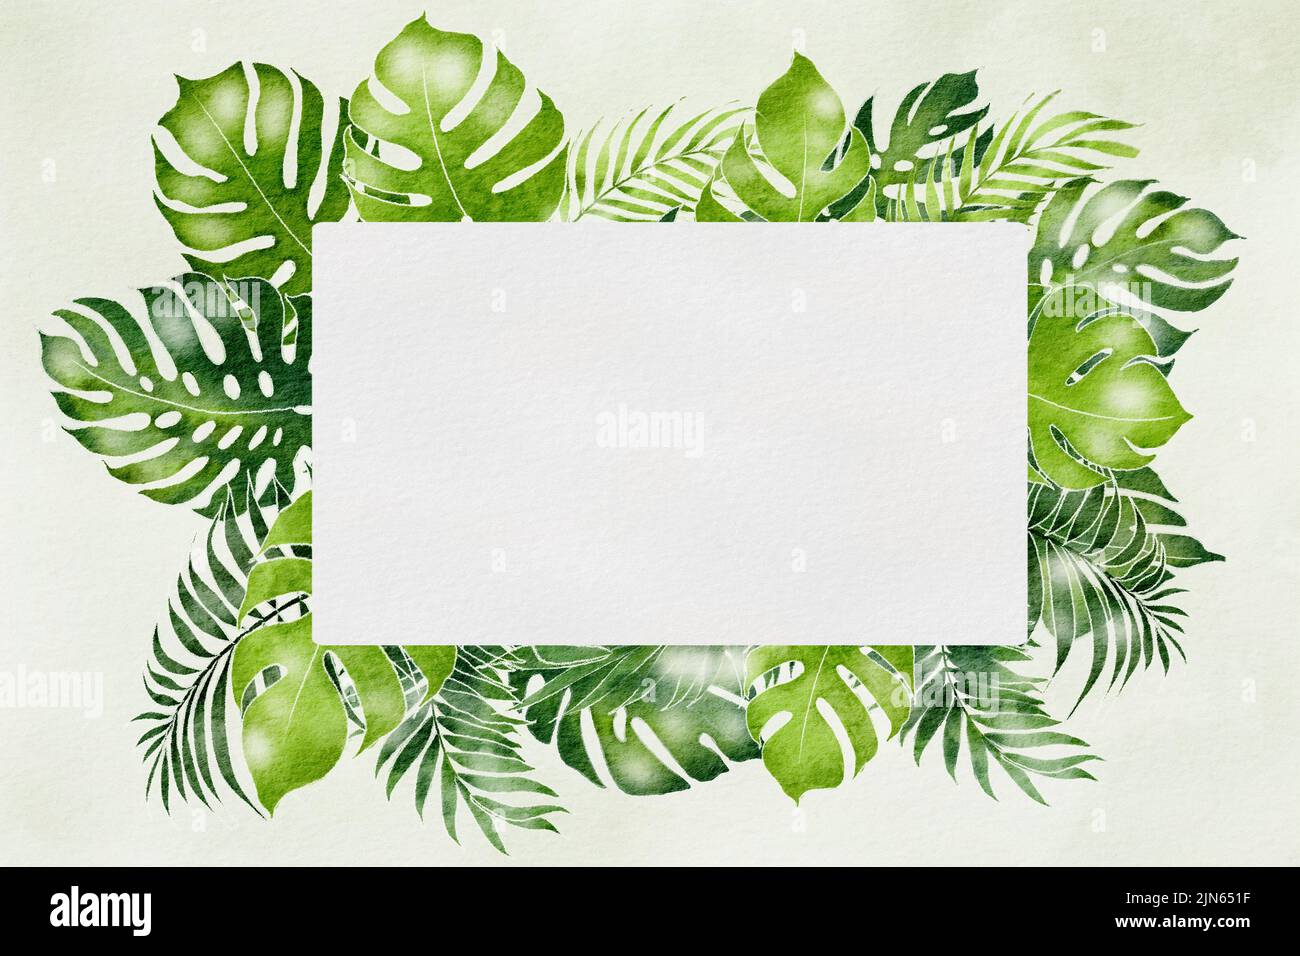 marco natural watercolor de fondo en verde con borde de hoja póster sobre color blanco agua de fondo Foto de stock